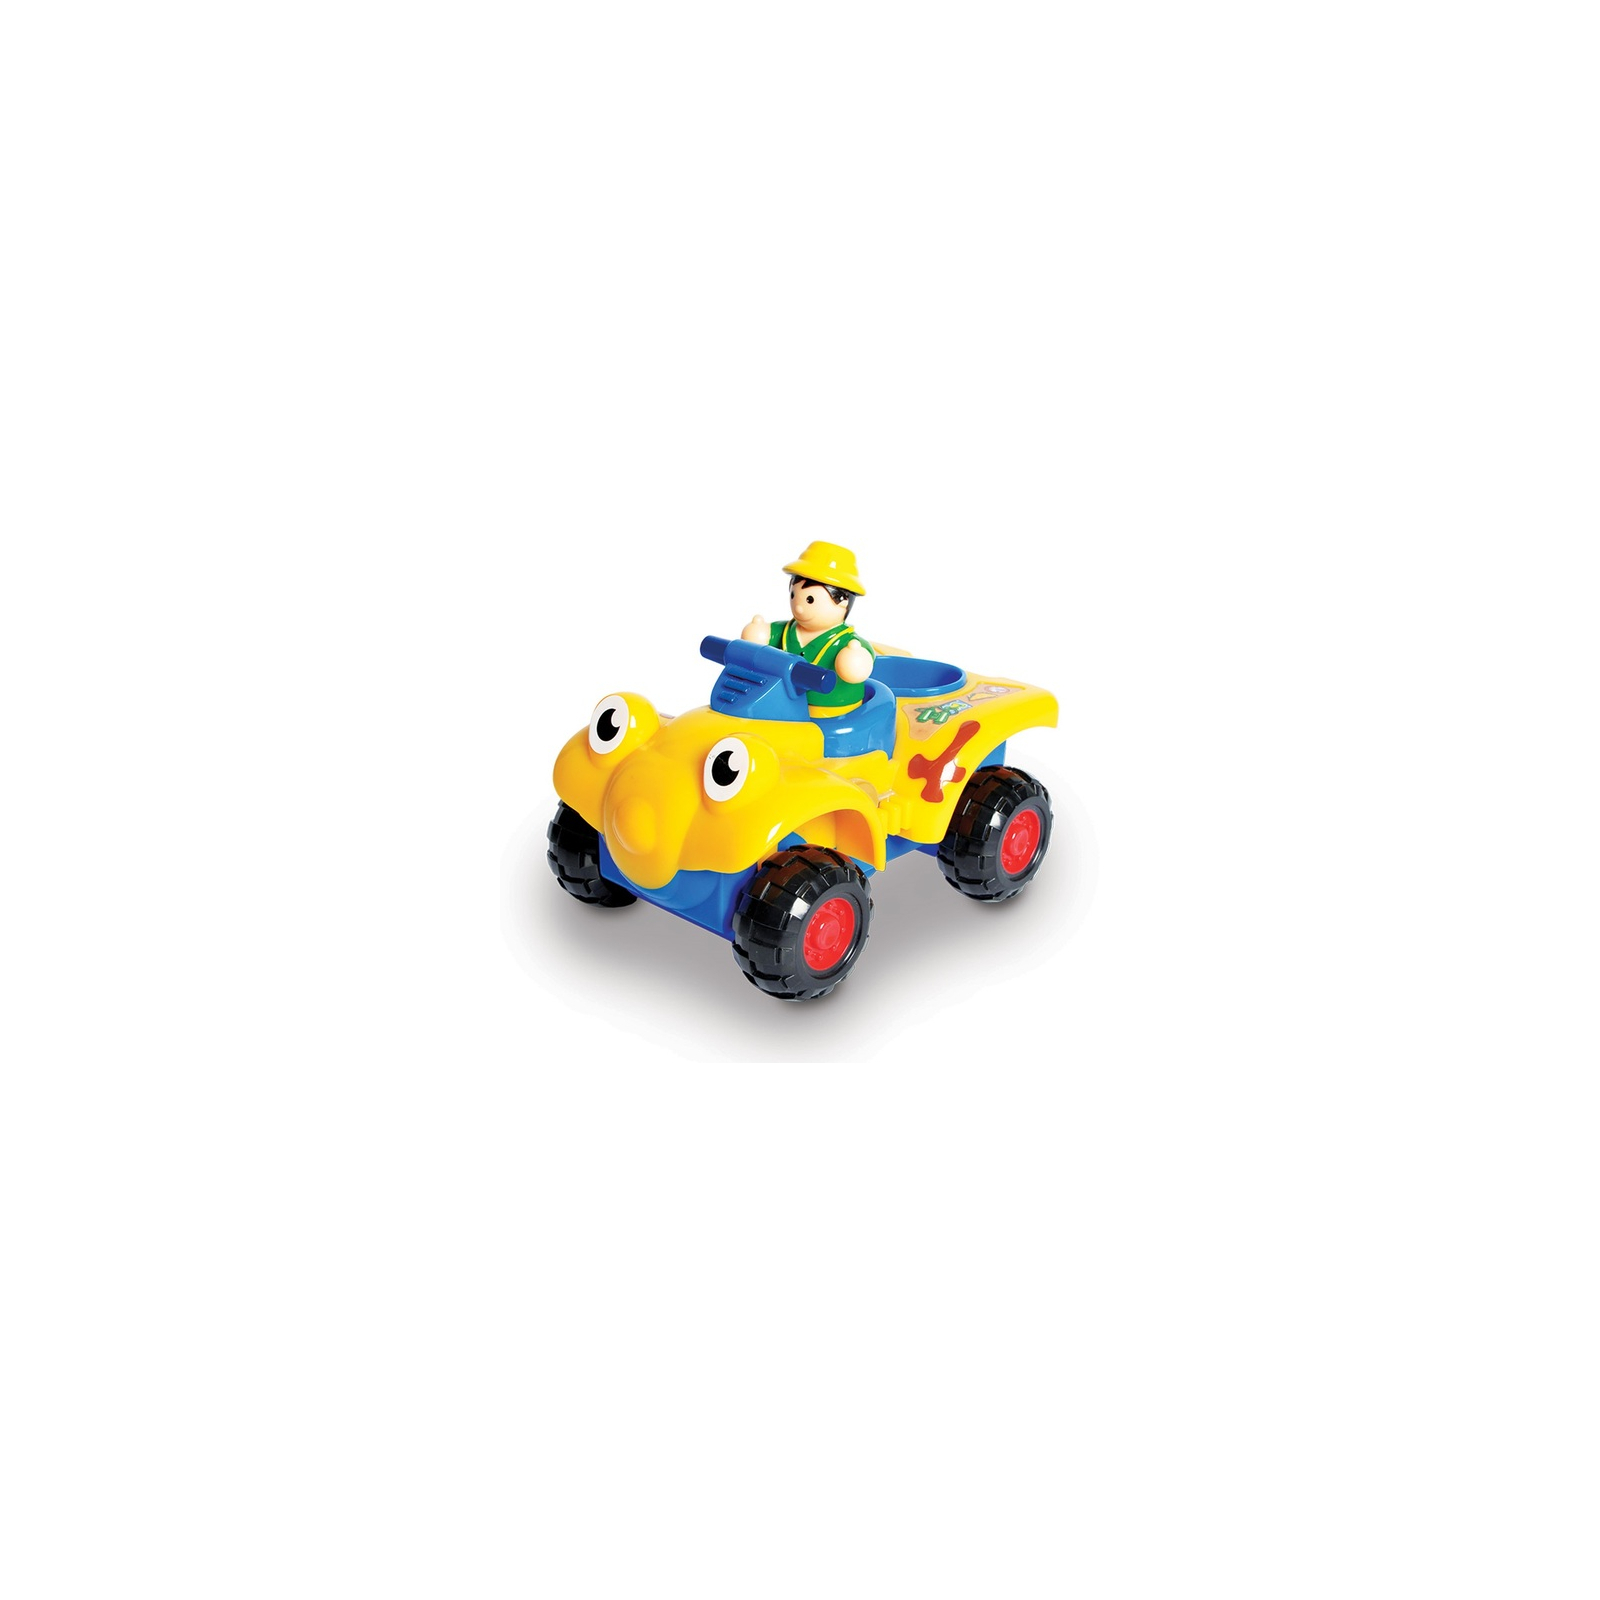 Развивающая игрушка Wow Toys Квадроцикл Качающийся Ральф (10170)